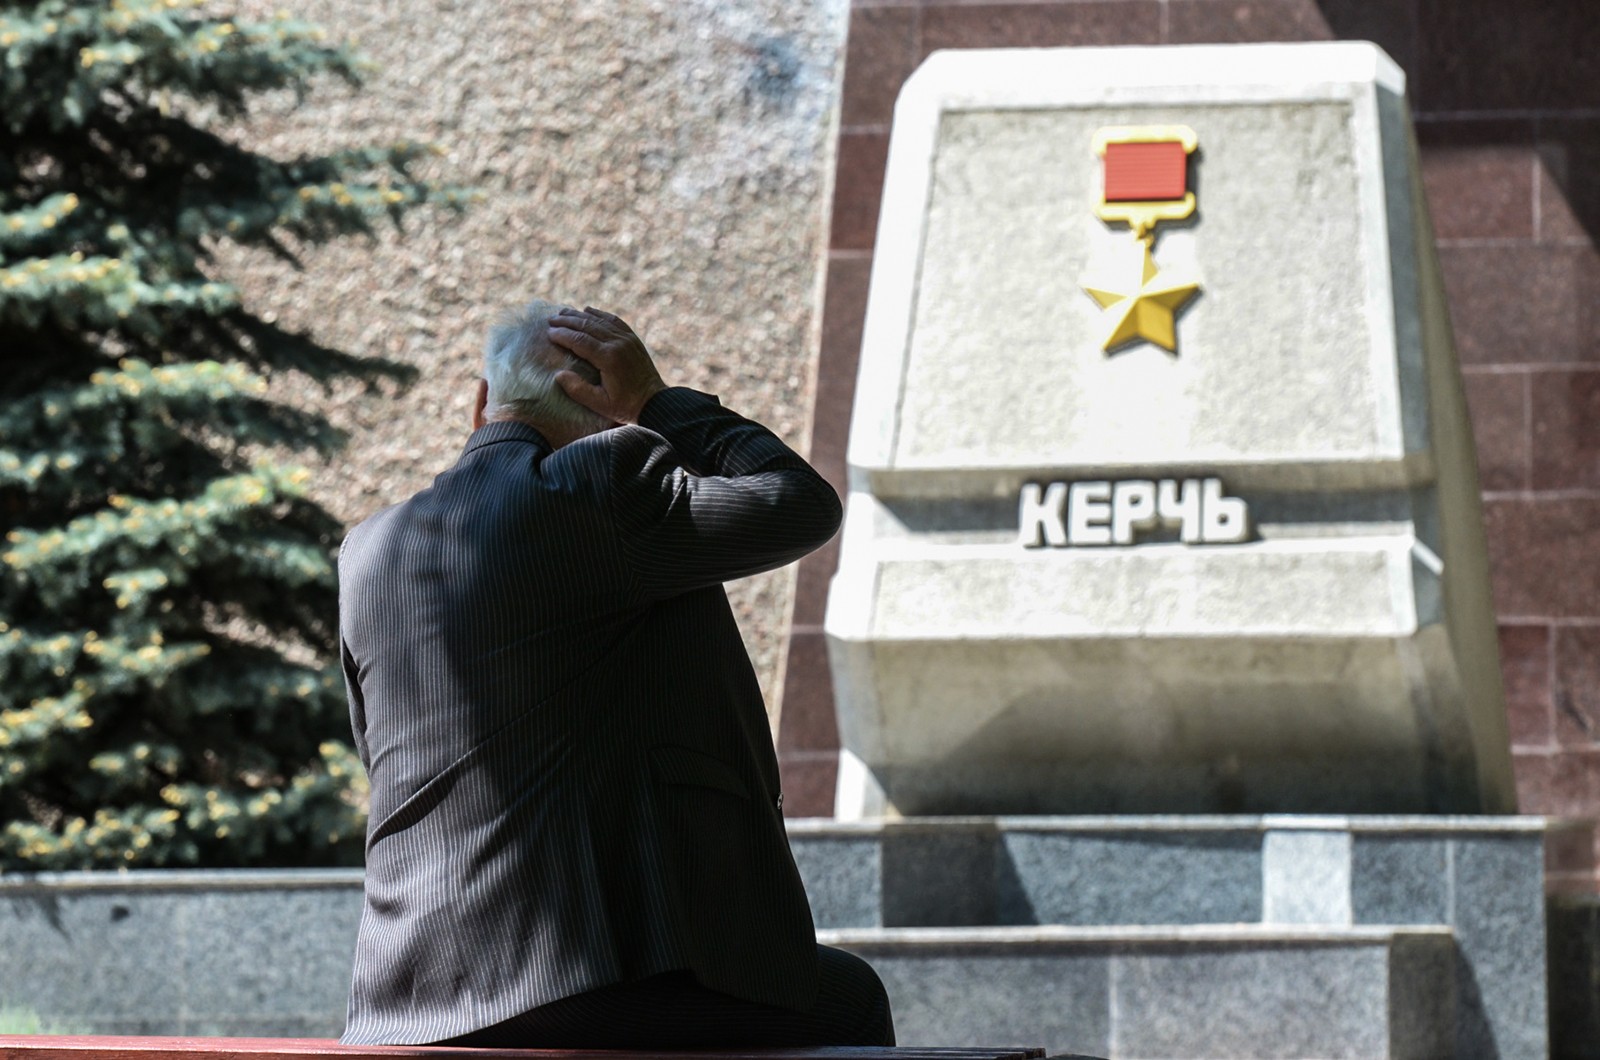 Аллея Городов-Героев — один из самых значимых севастопольских мемориалов, связанных с Великой Отечественной войной